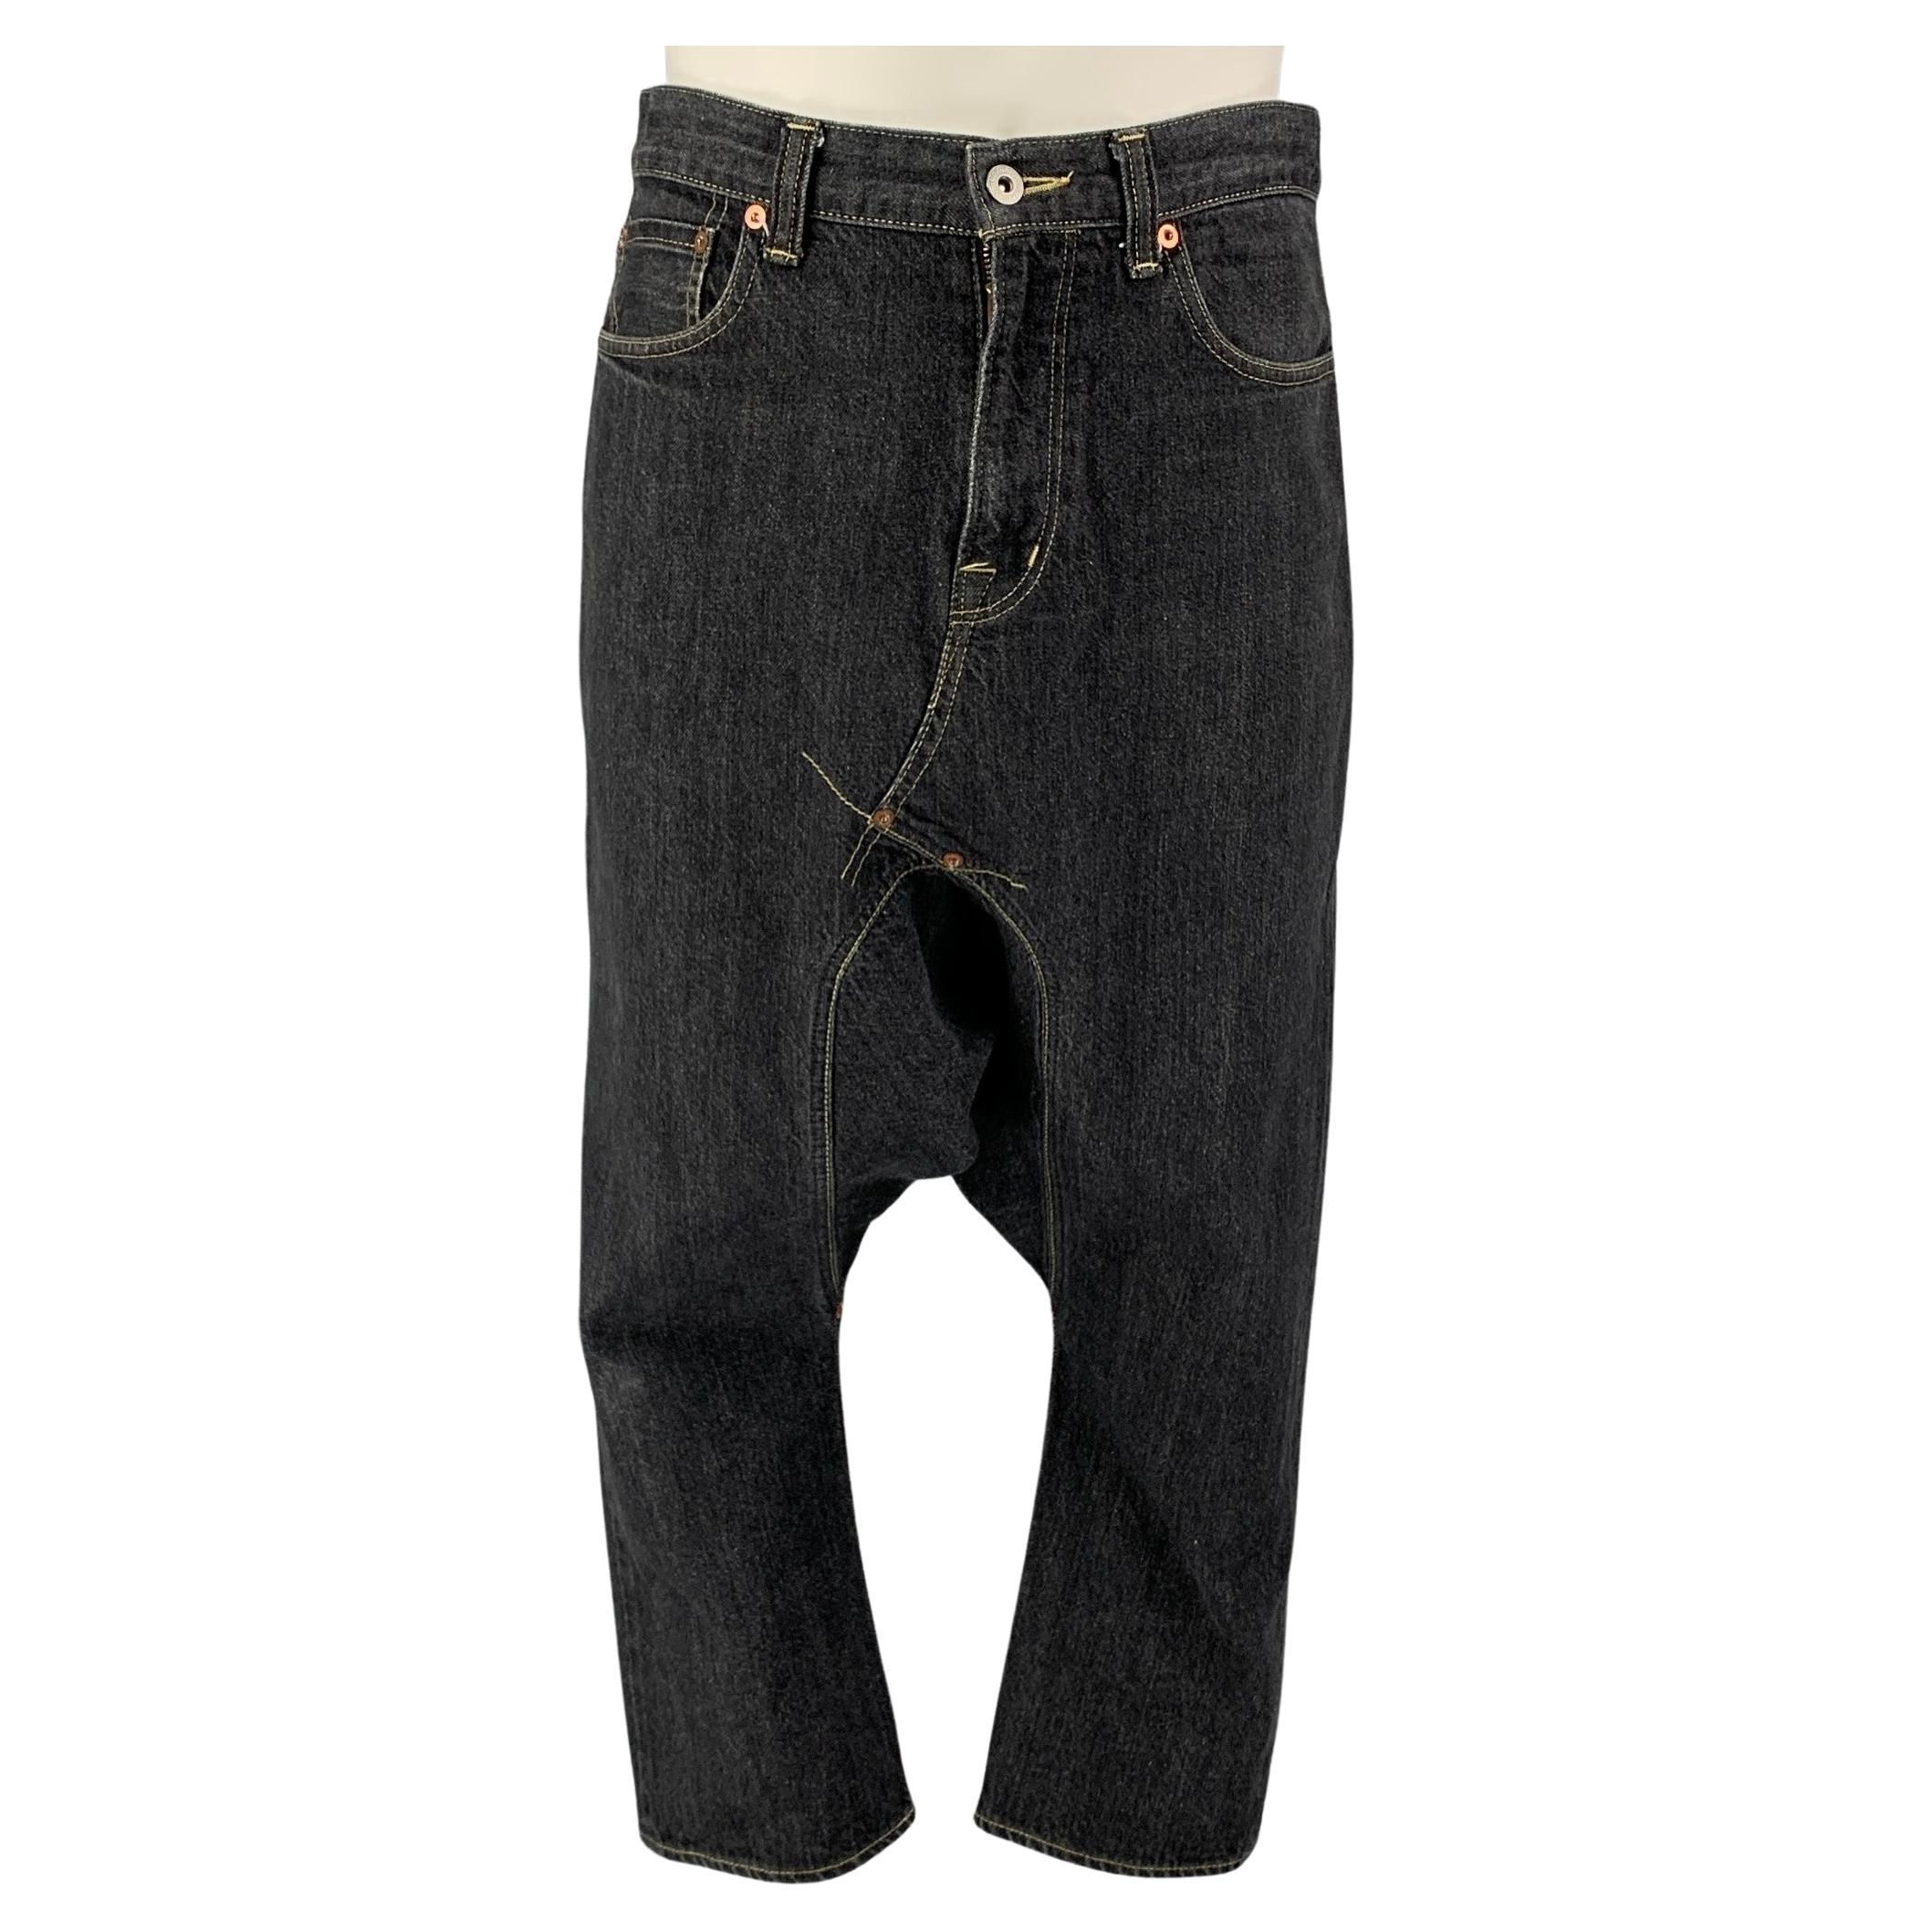 COMME des GARCONS GANRYU Size S Charcoal Contrast Stitch Selvedge Denim Jeans